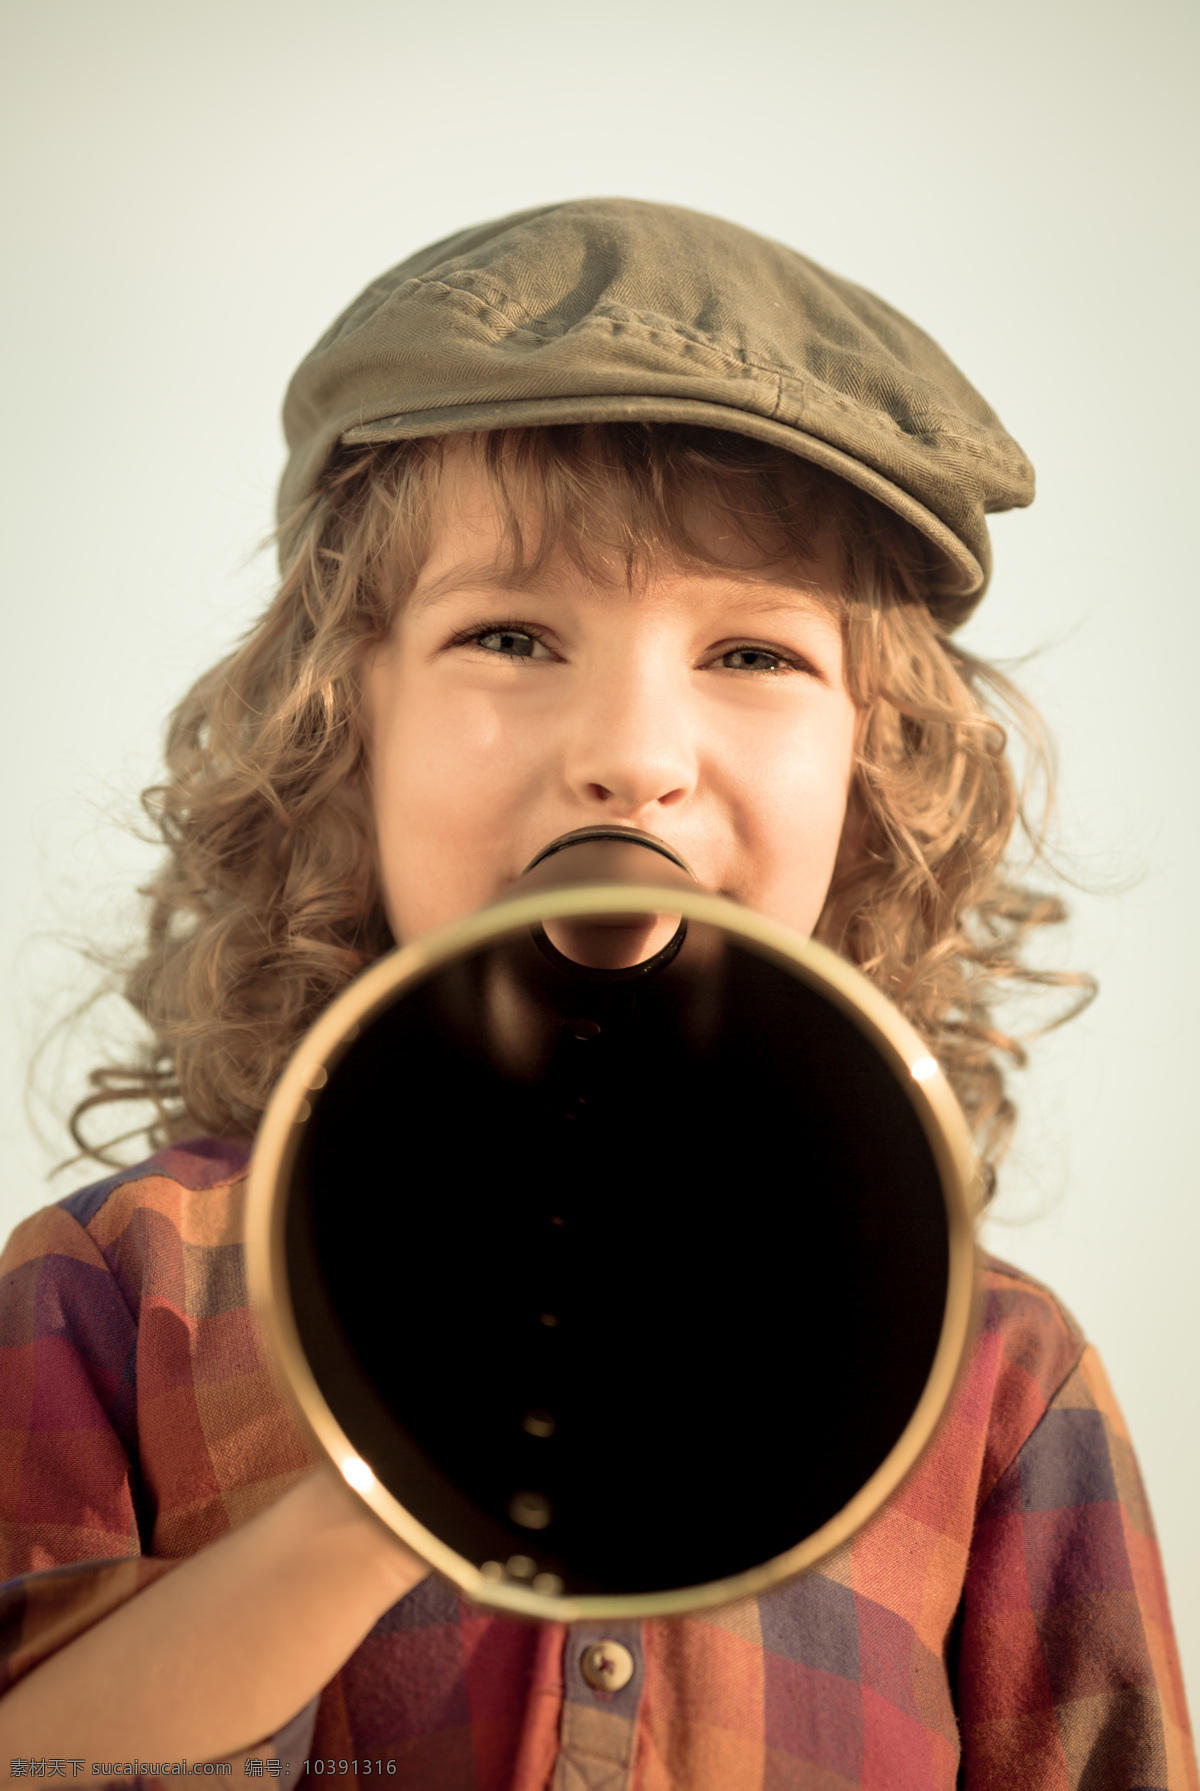 喊 话筒 外国 孩子 儿童 人物摄影 导演 电影 喊话筒 喇叭 儿童图片 人物图片